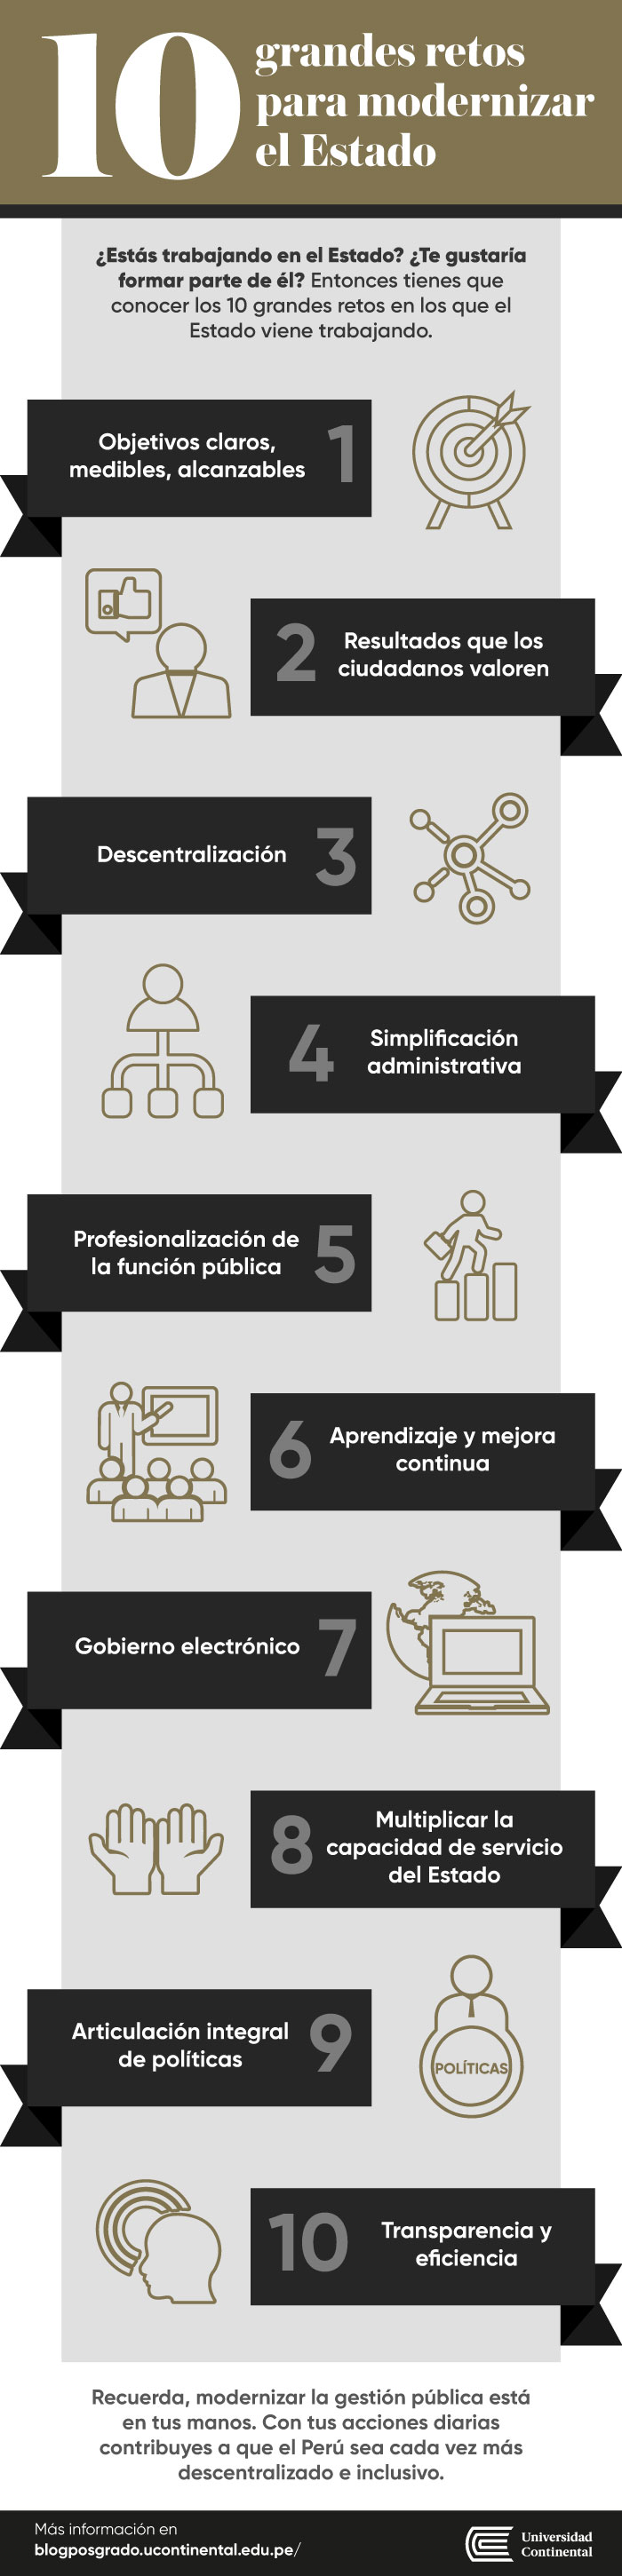 infografia-10_retos_de_la_modernización_del_Estado.jpg